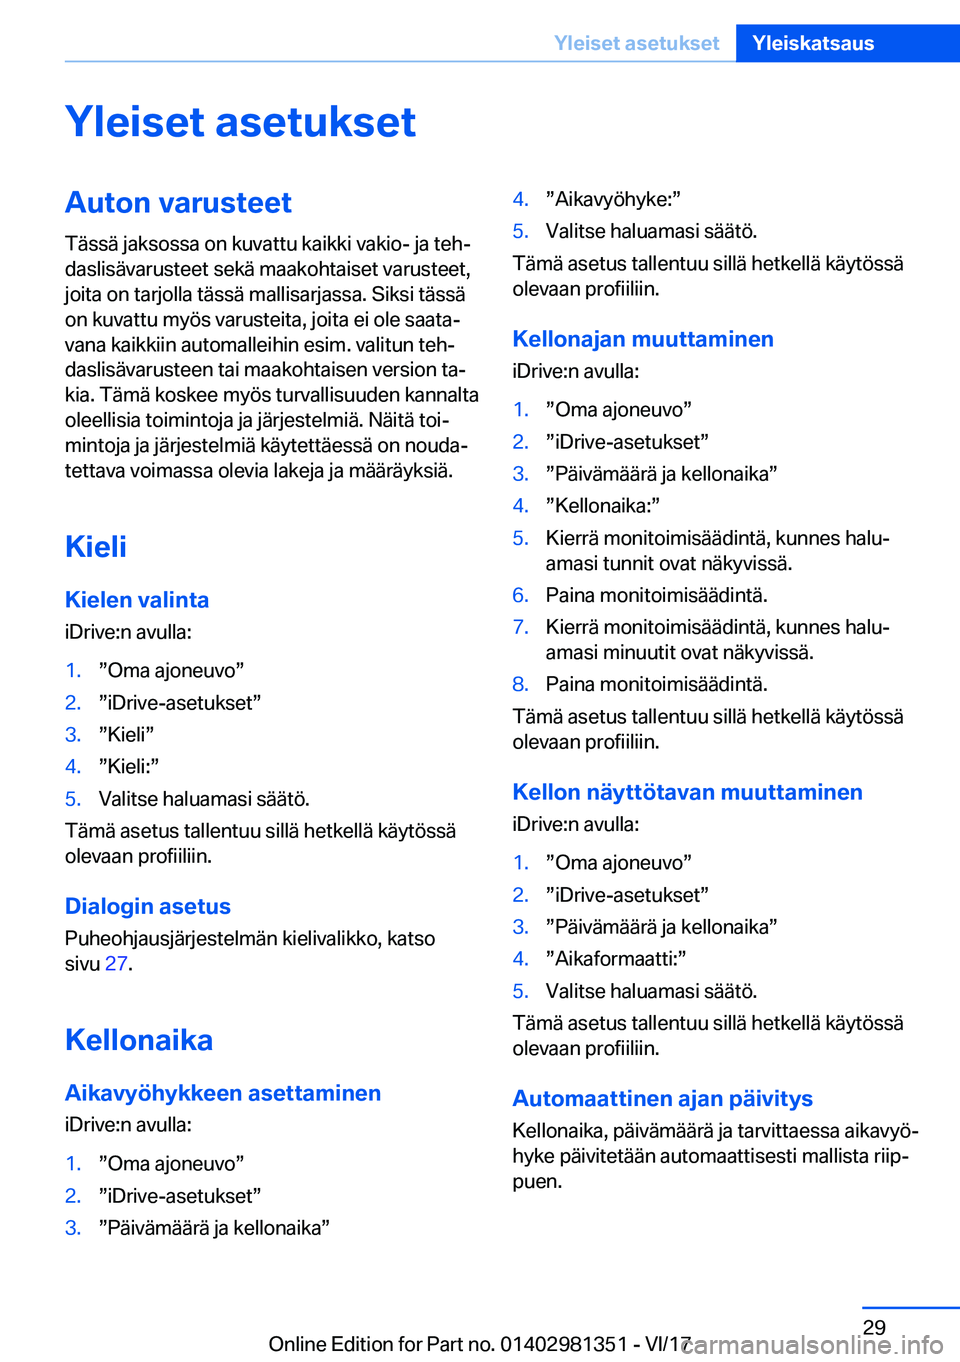 BMW X4 2018  Omistajan Käsikirja (in Finnish) �Y�l�e�i�s�e�t��a�s�e�t�u�k�s�e�t�A�u�t�o�n��v�a�r�u�s�t�e�e�t
�T�